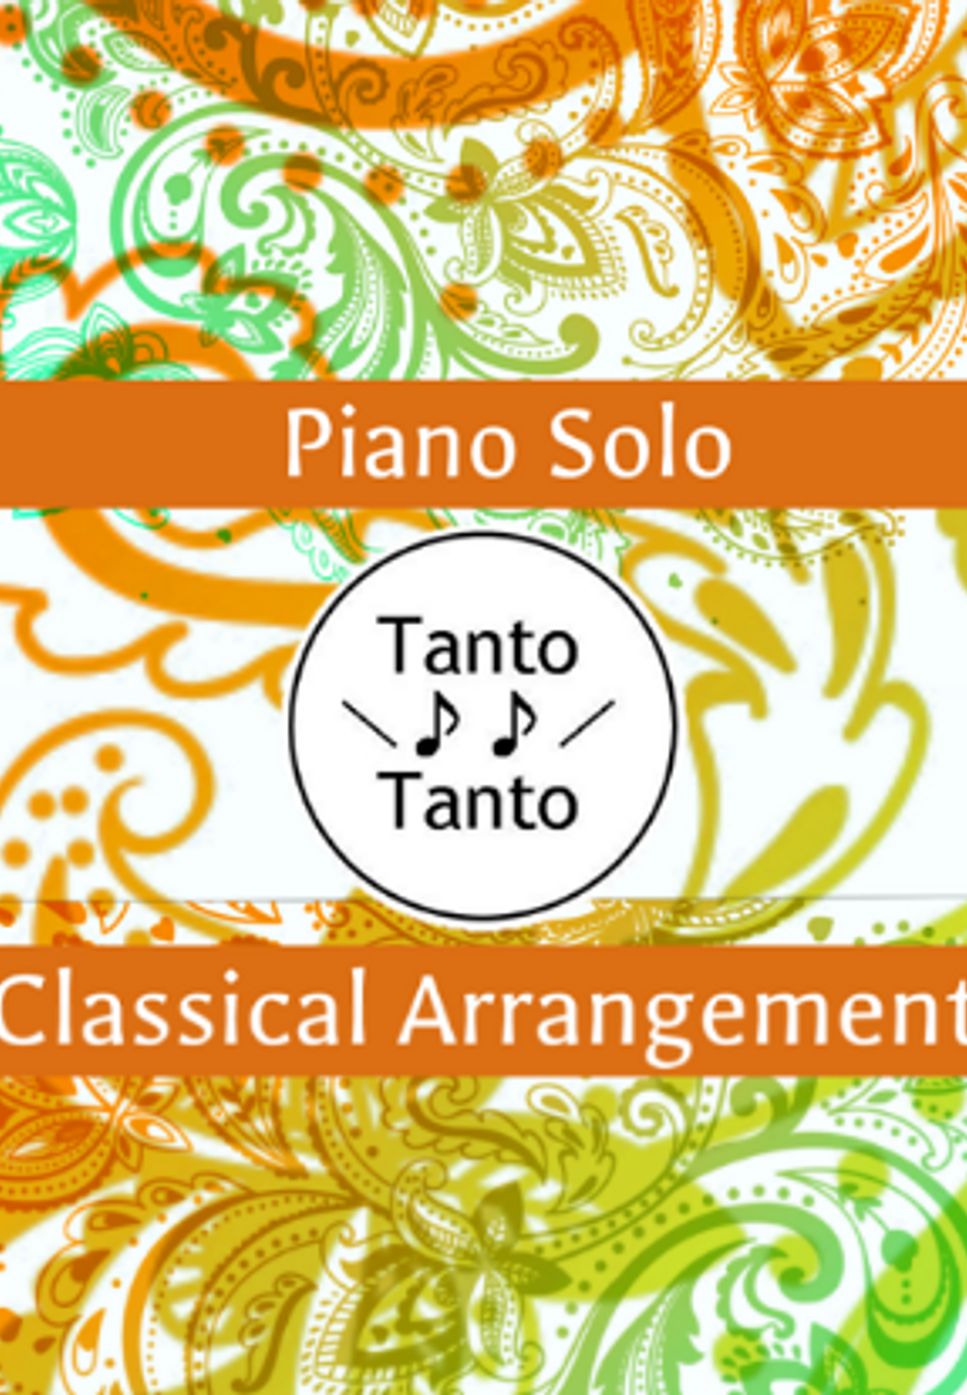 フレデリック・ショパン - Chopin Nocturne No.20  遺作 (クラシックアレンジ/Piano Solo in Am) by Tanto Tanto